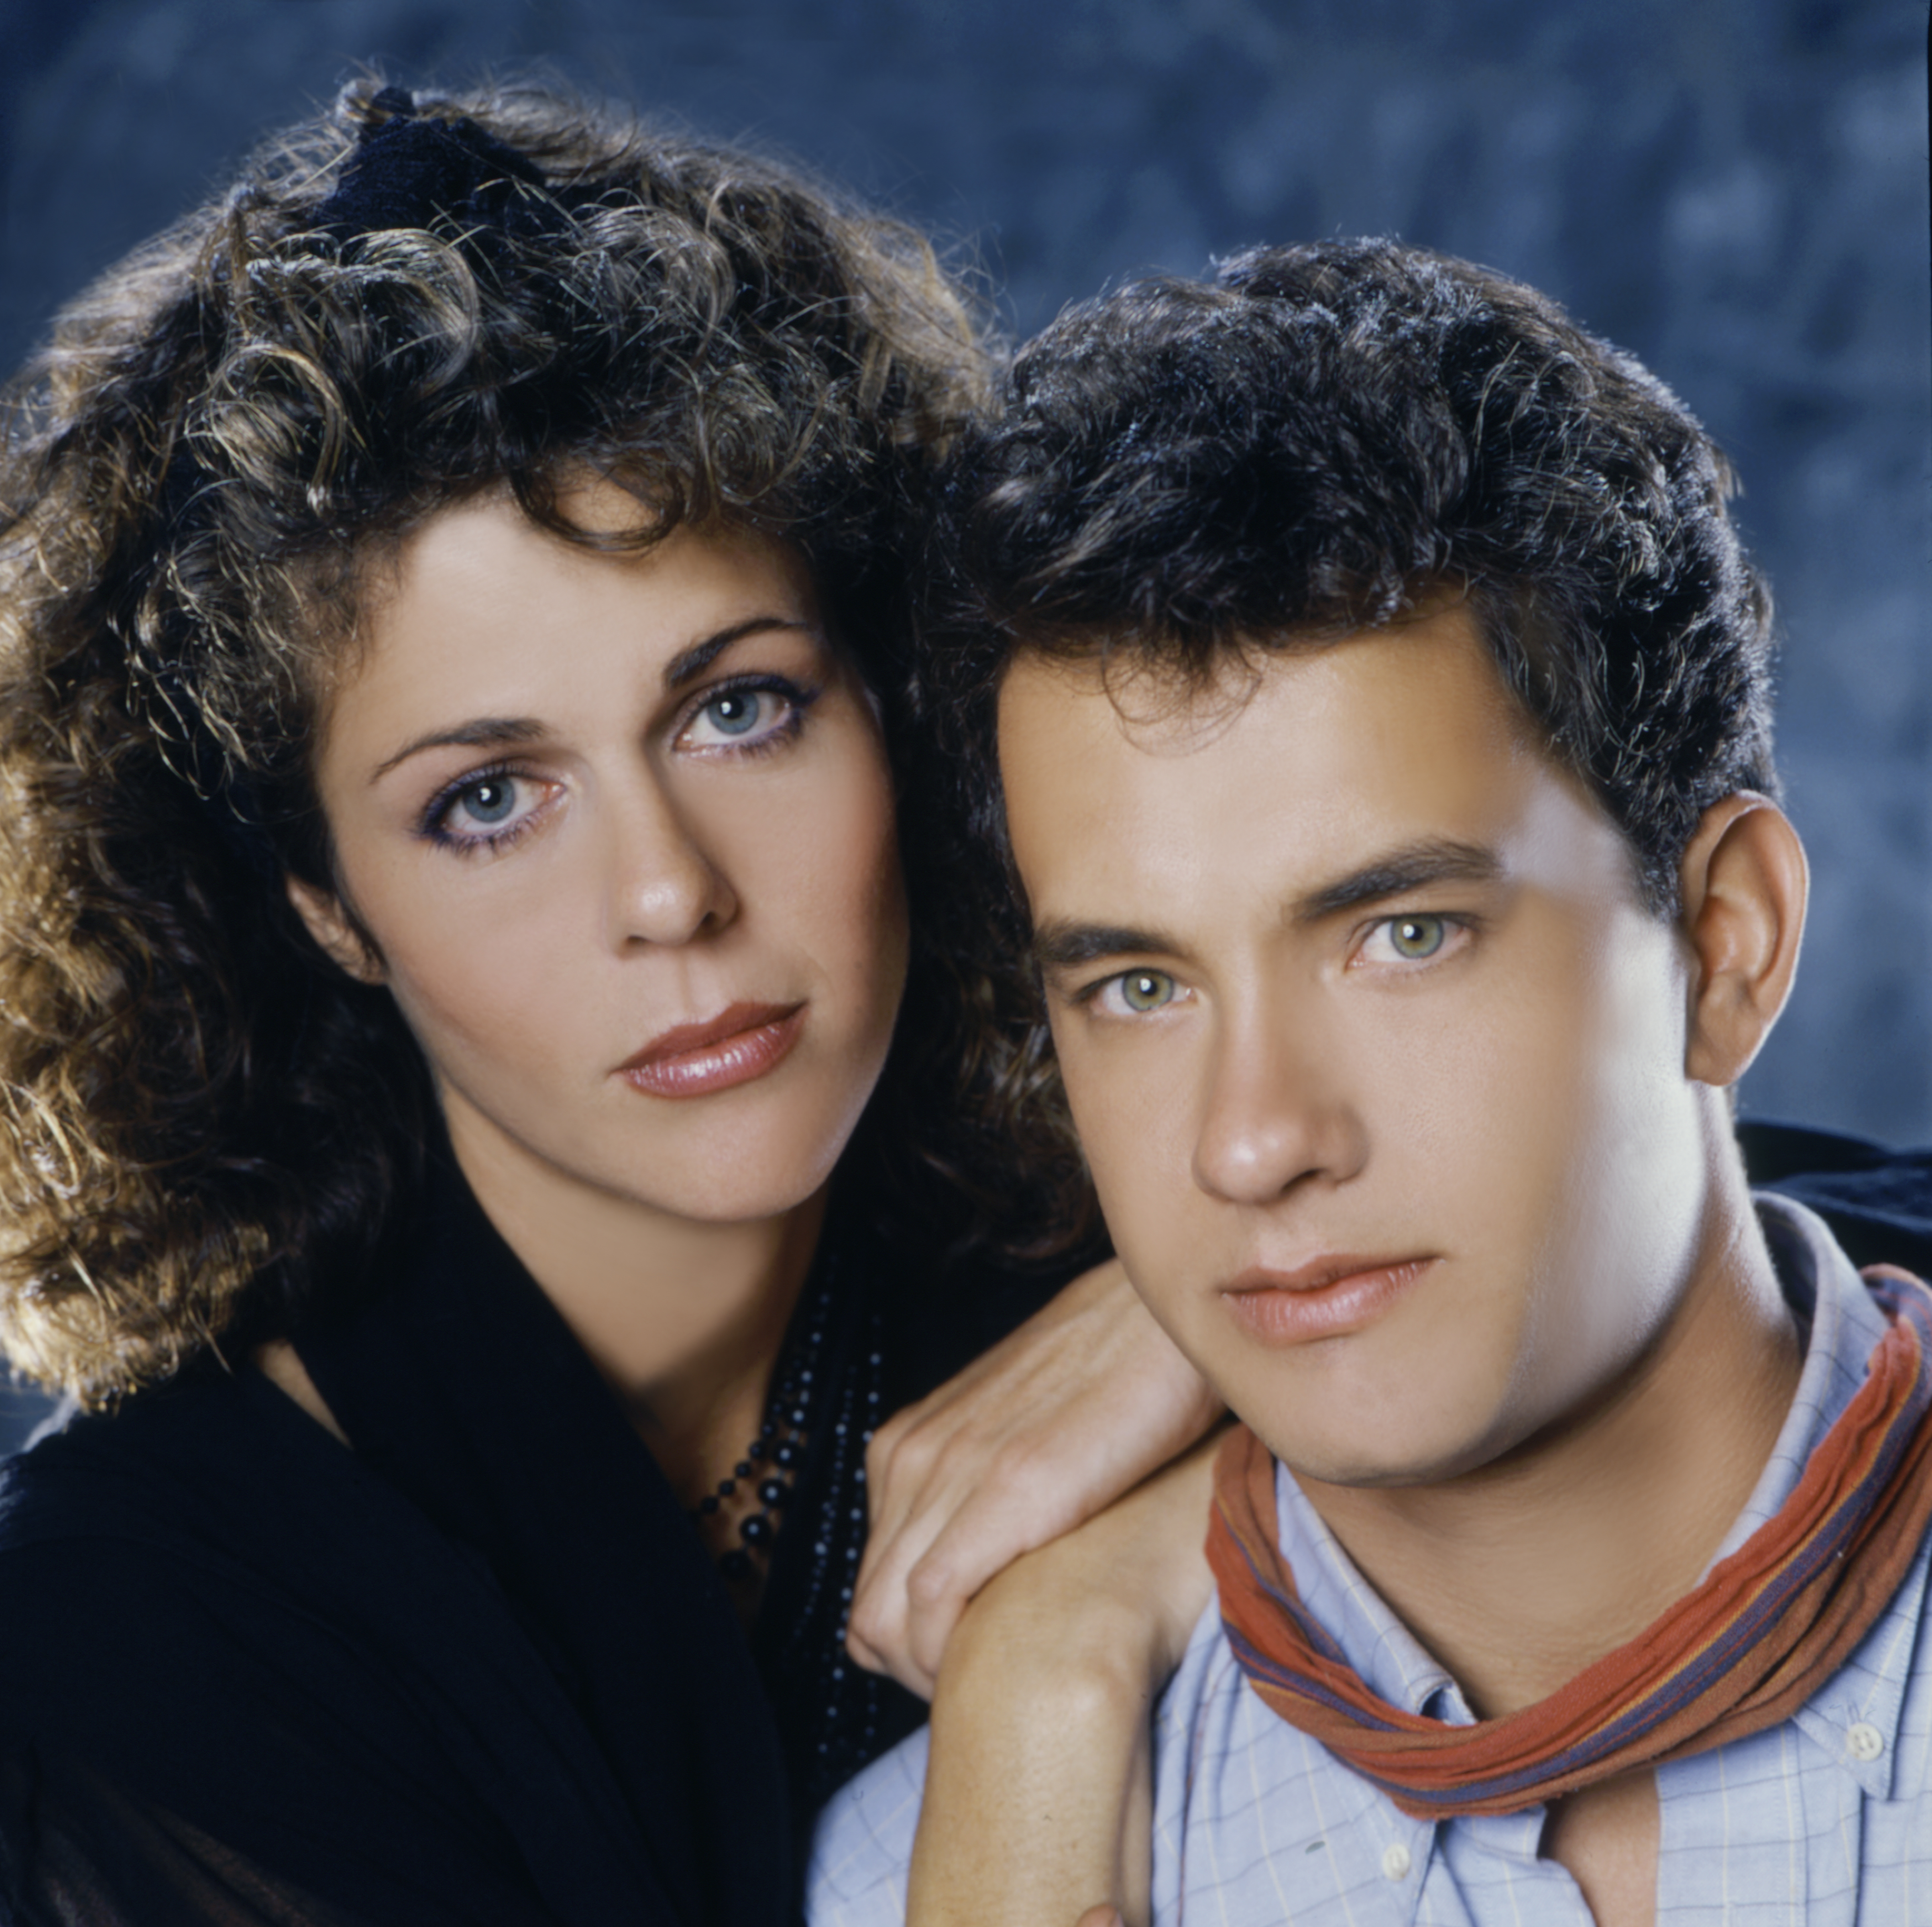 Rita Wilson et Tom Hanks lors du tournage de " Toujours prêts " en 1985 | Source : Getty Images